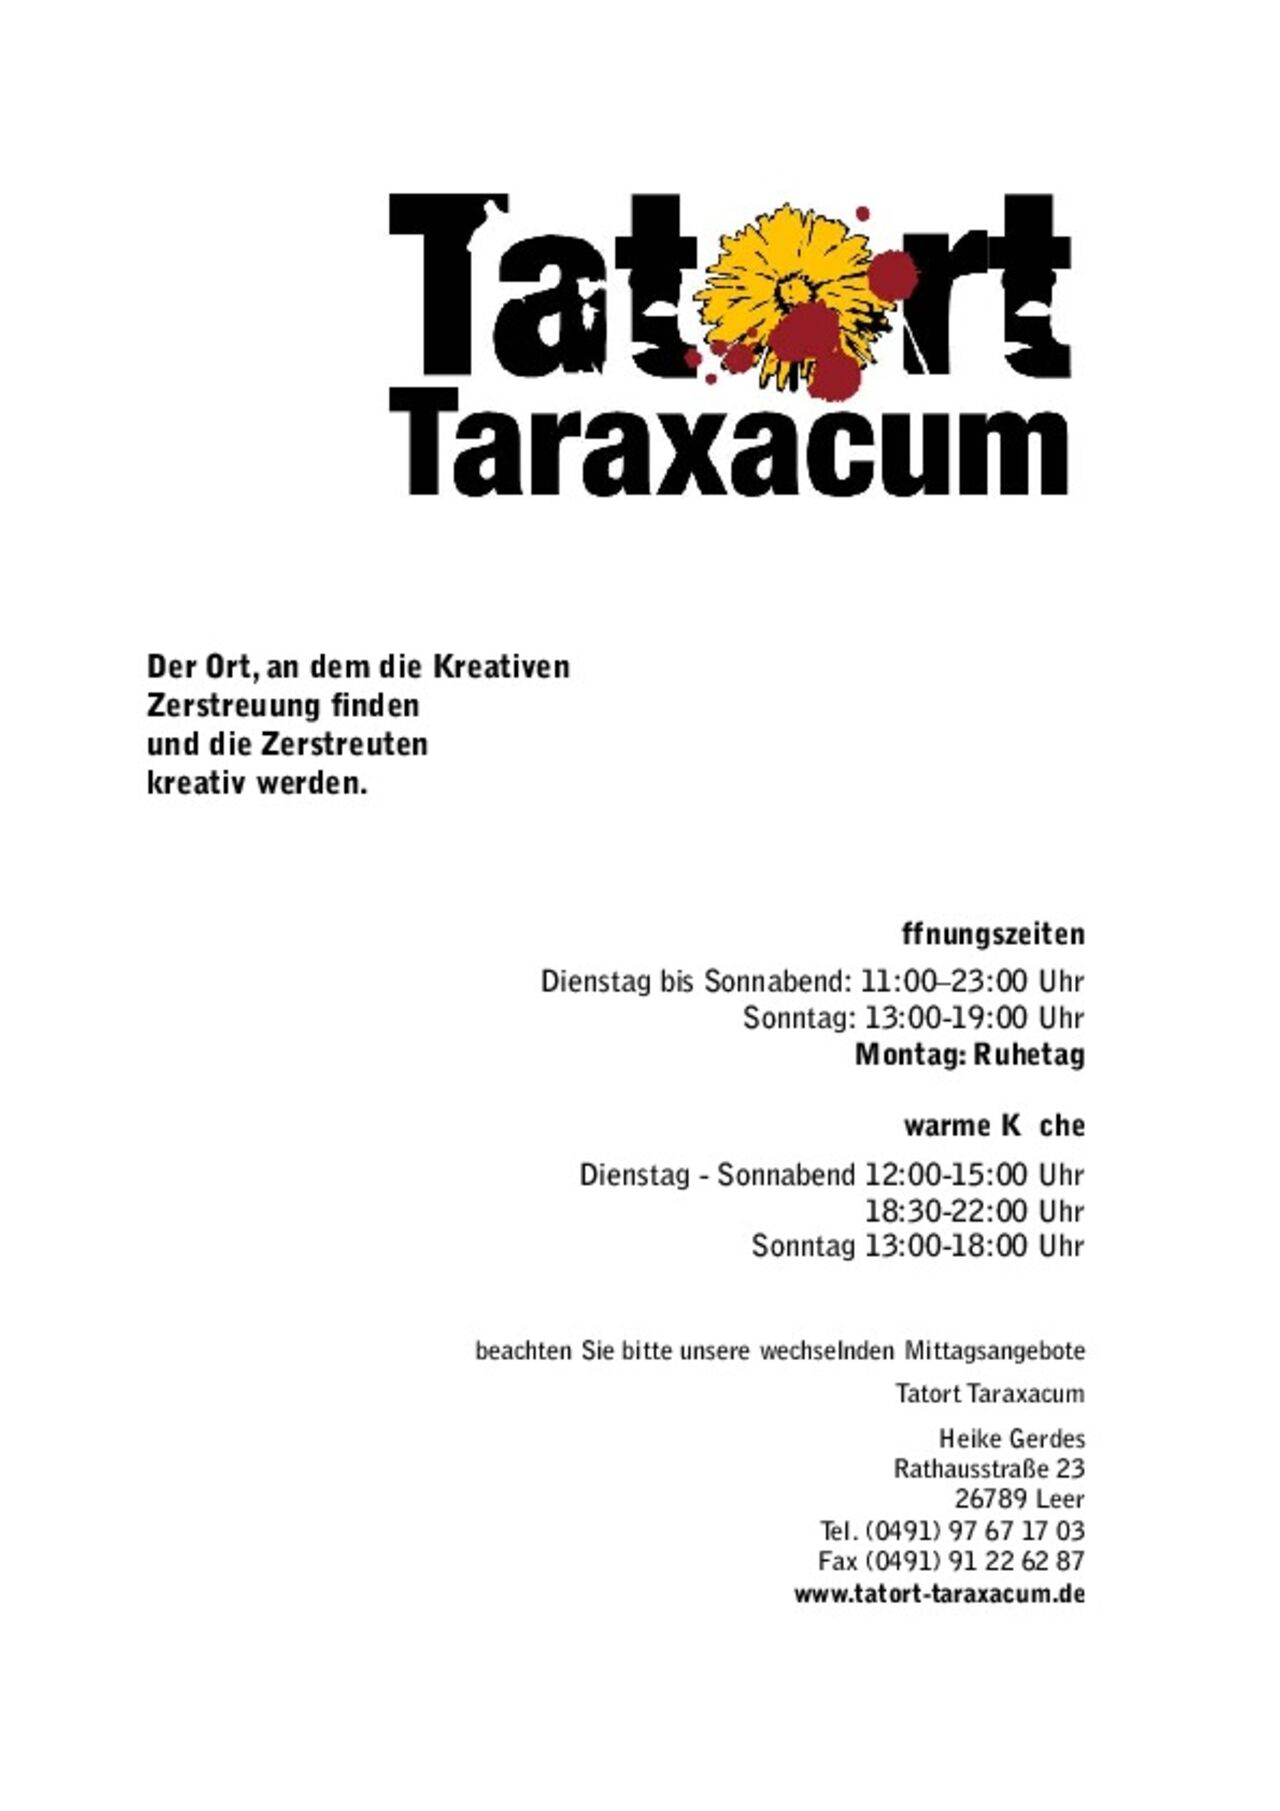 A photo of Tatort Taraxacum